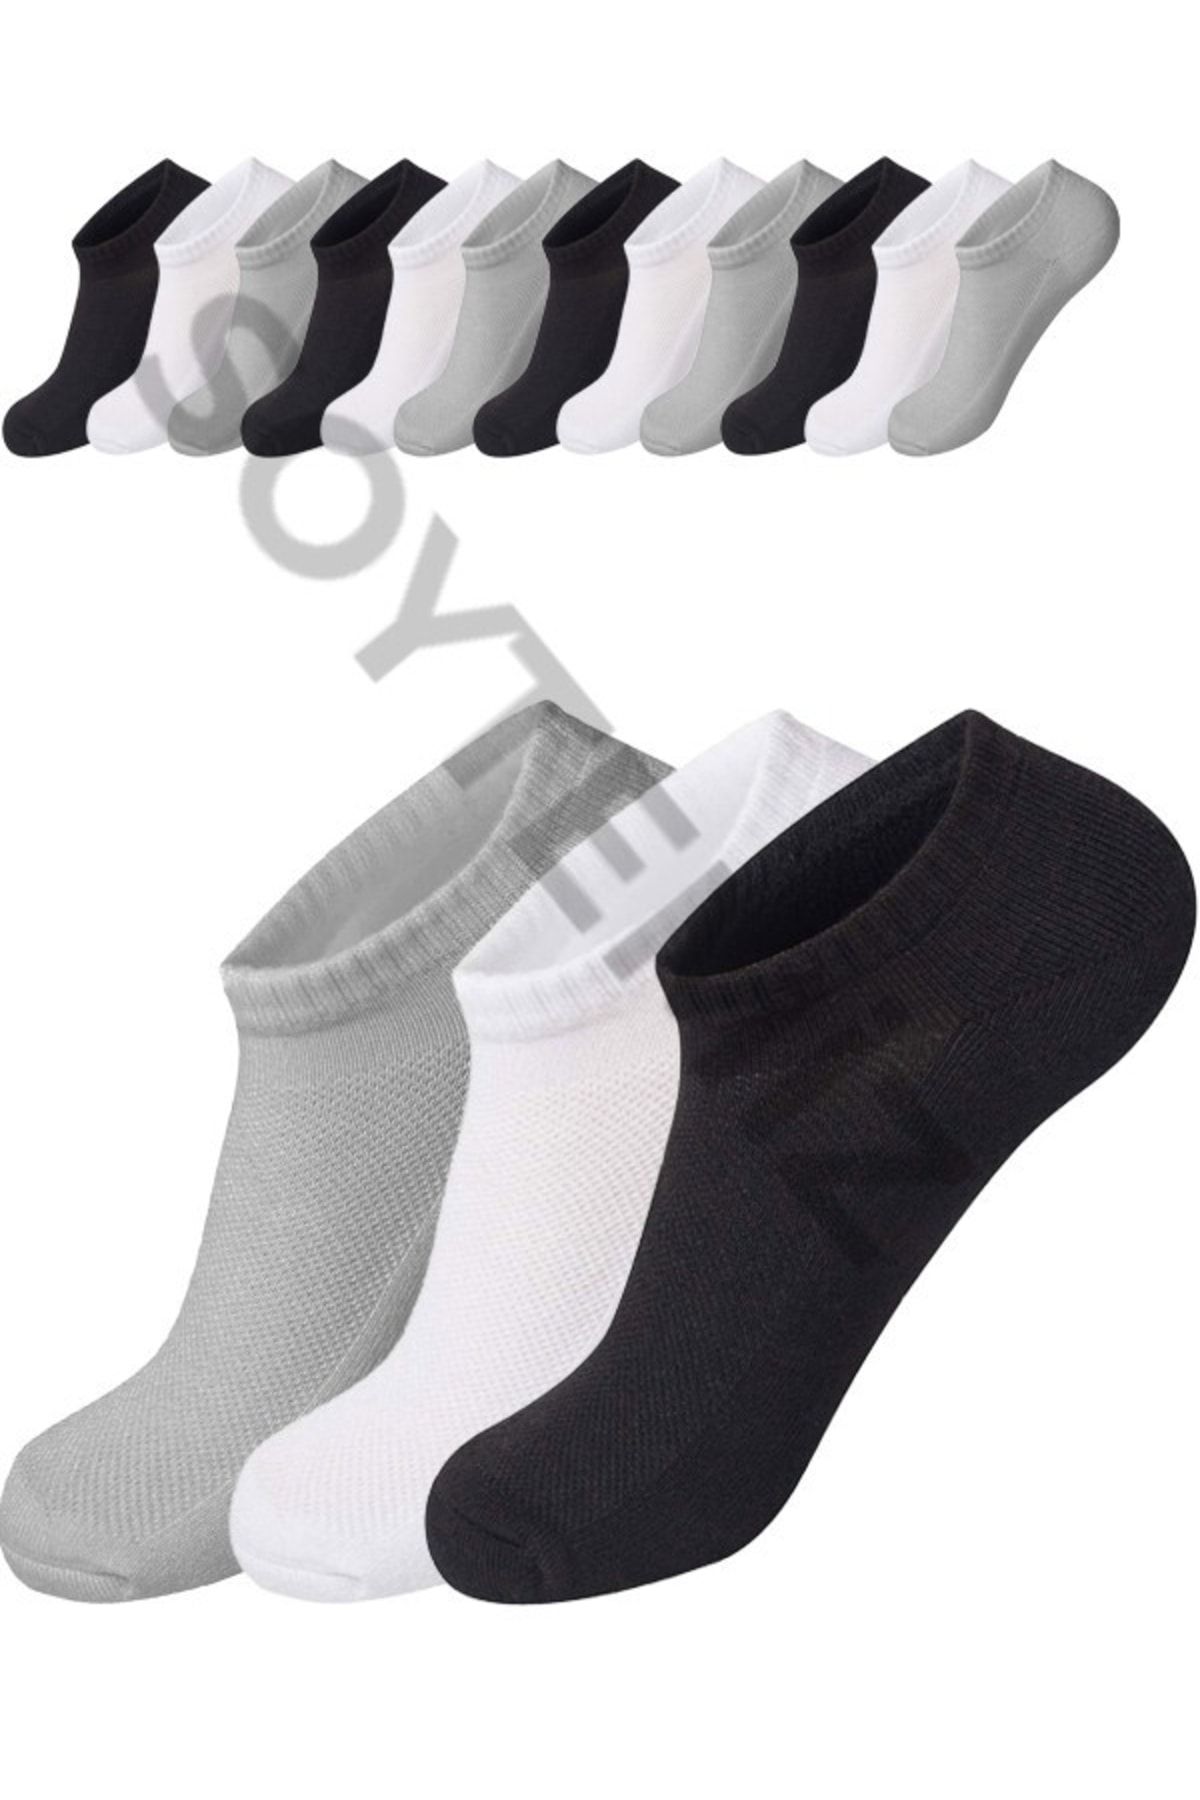 SOYTEMİZ Unısex Cotton Görünmez Sneakers Spor Çorap 12 Çift Siyah Beyaz Gri